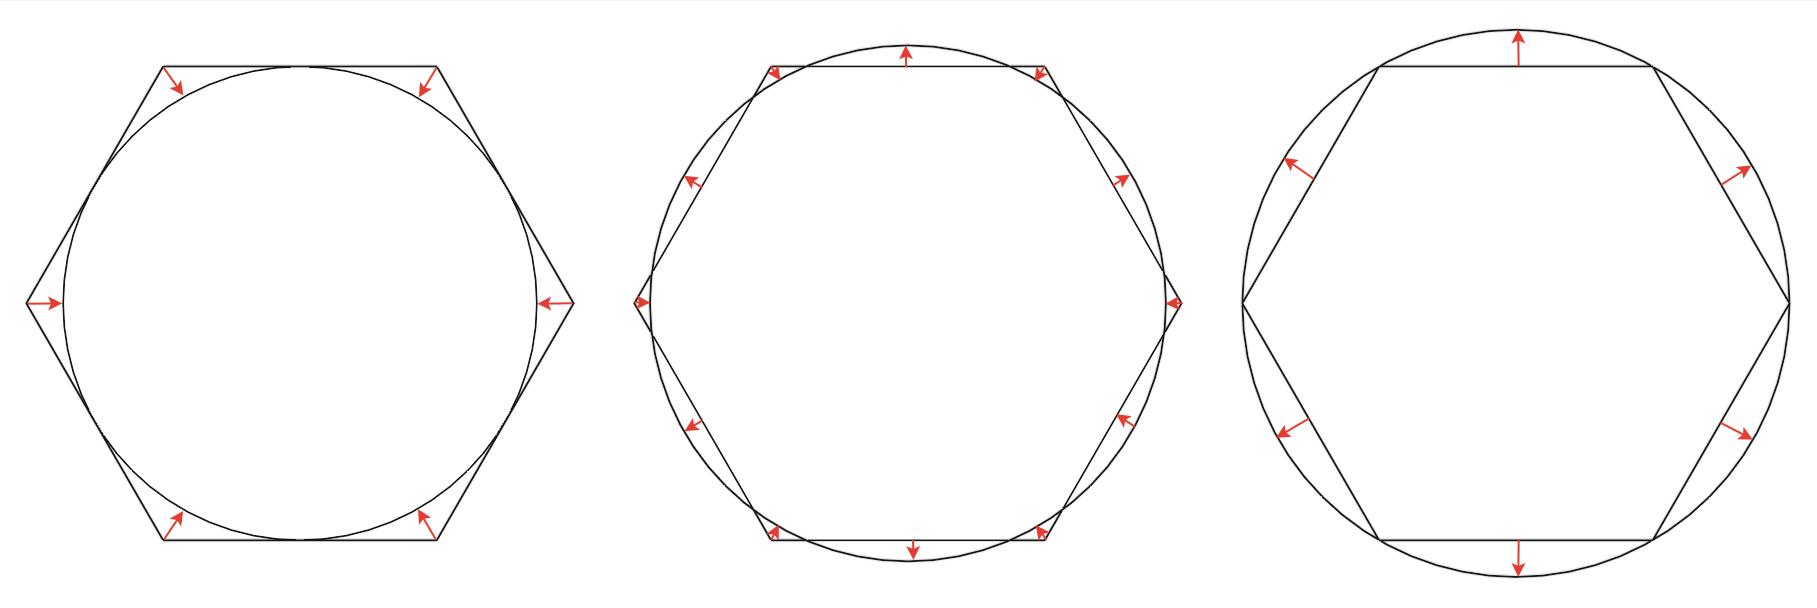 Рис.4. Варианты сопоставления Low Poly и High Poly цилиндров. Красными стрелочками указаны области наибольшего несовпадения геометрии. 